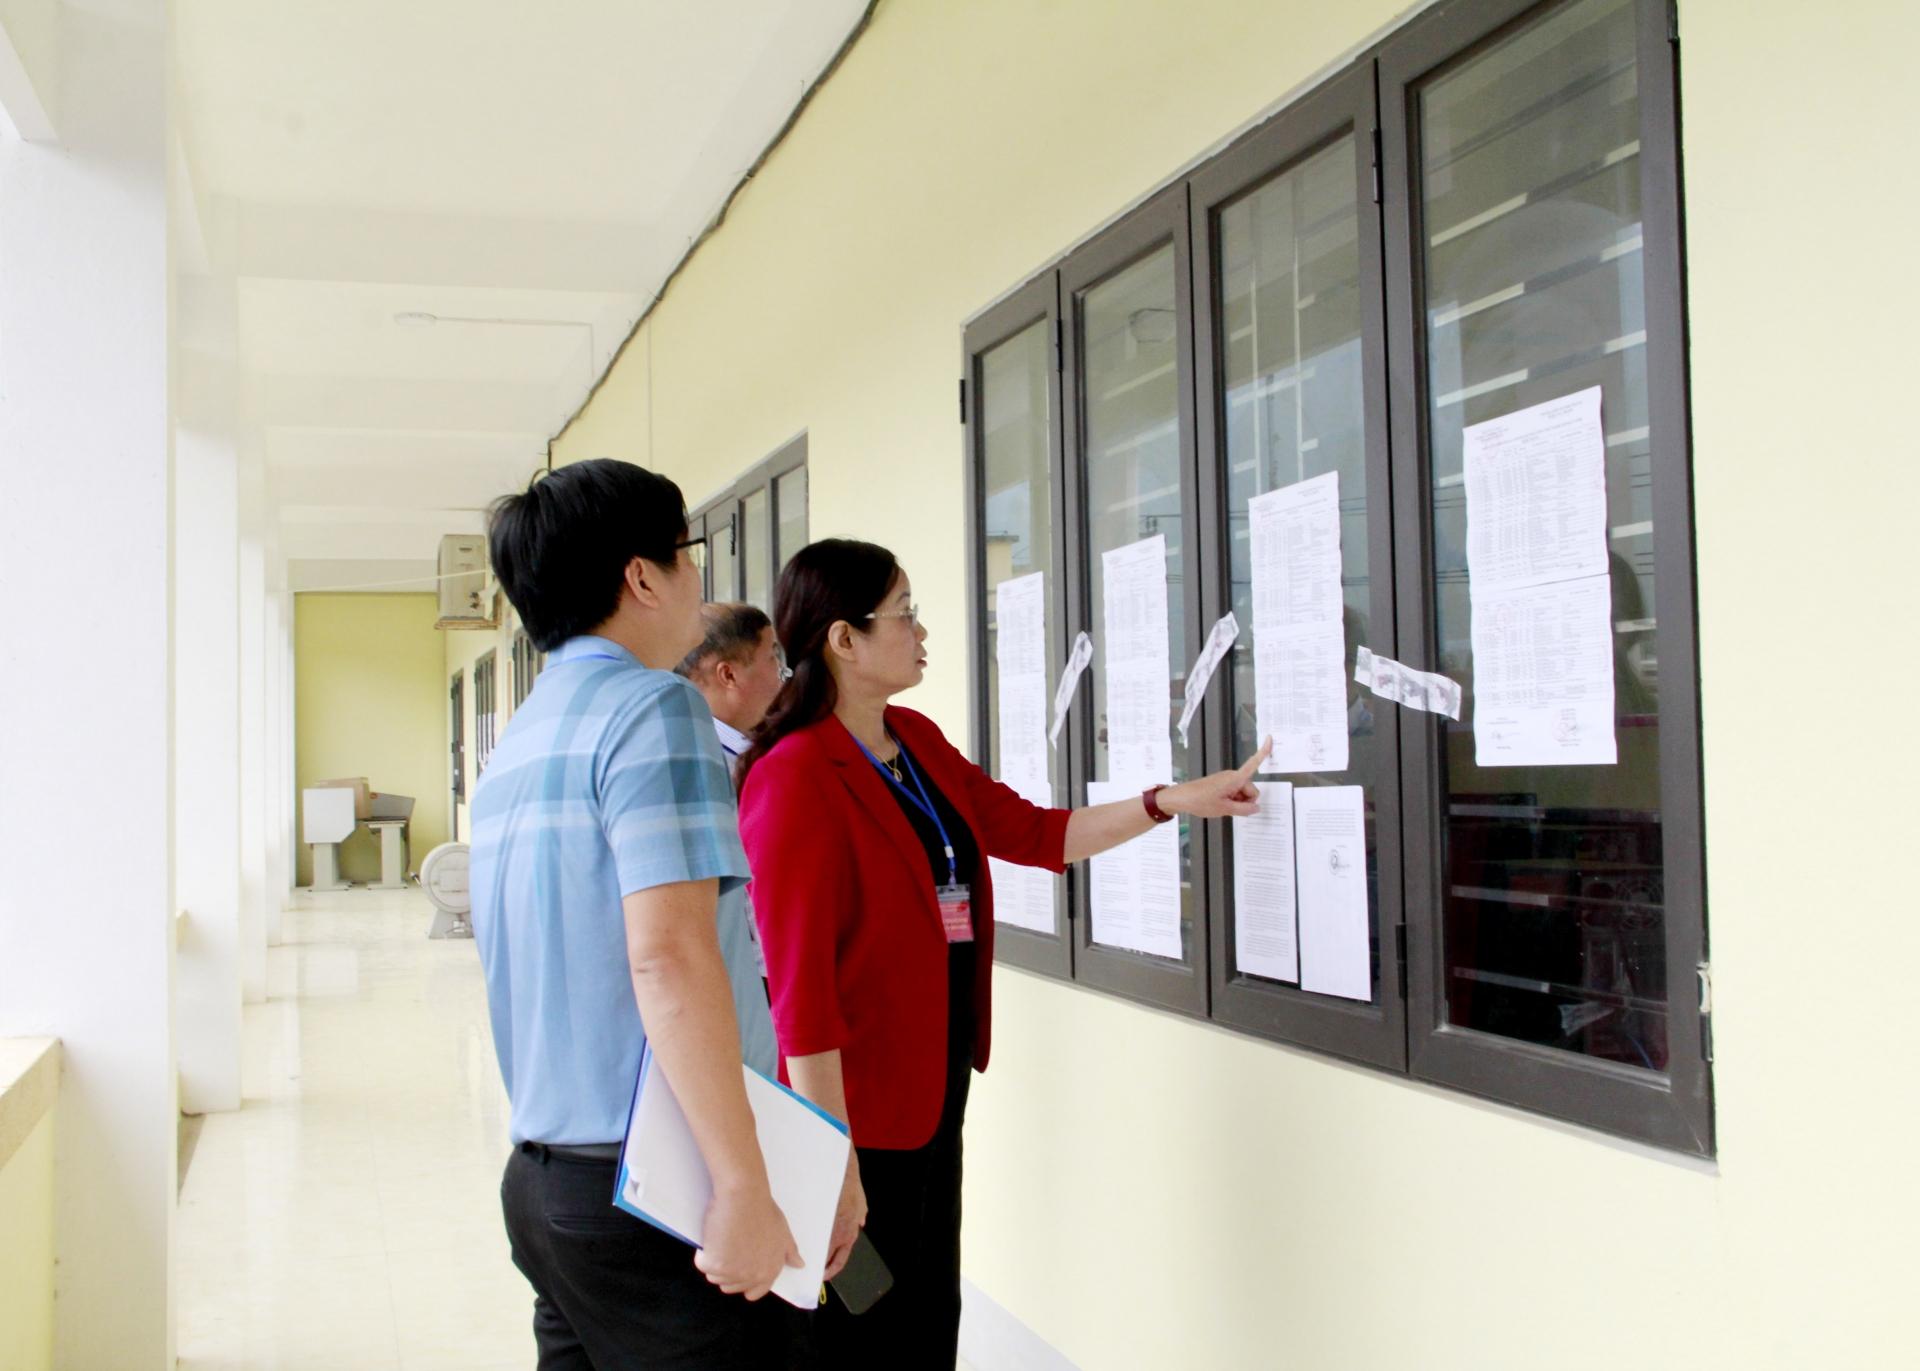 Phó Chủ tịch UBND tỉnh Hà Thị Minh Hạnh kiểm tra các phòng thi trước giờ thi.